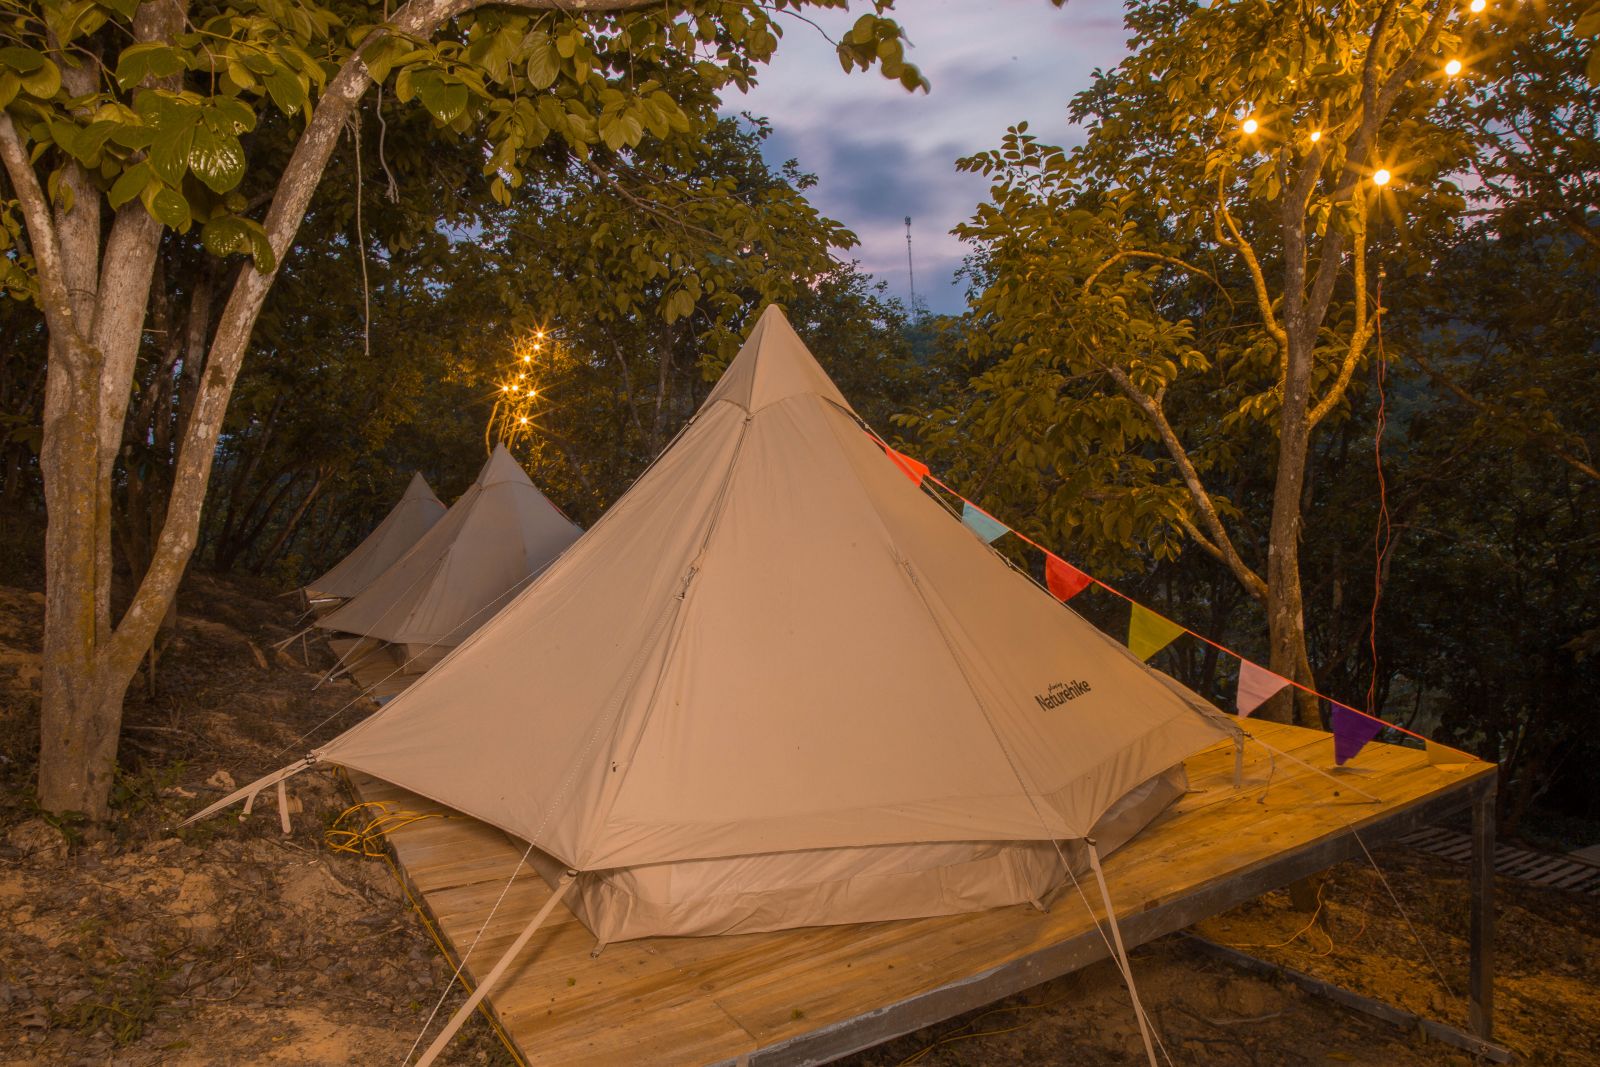 Konoha Đà Lạt- Camping and chill